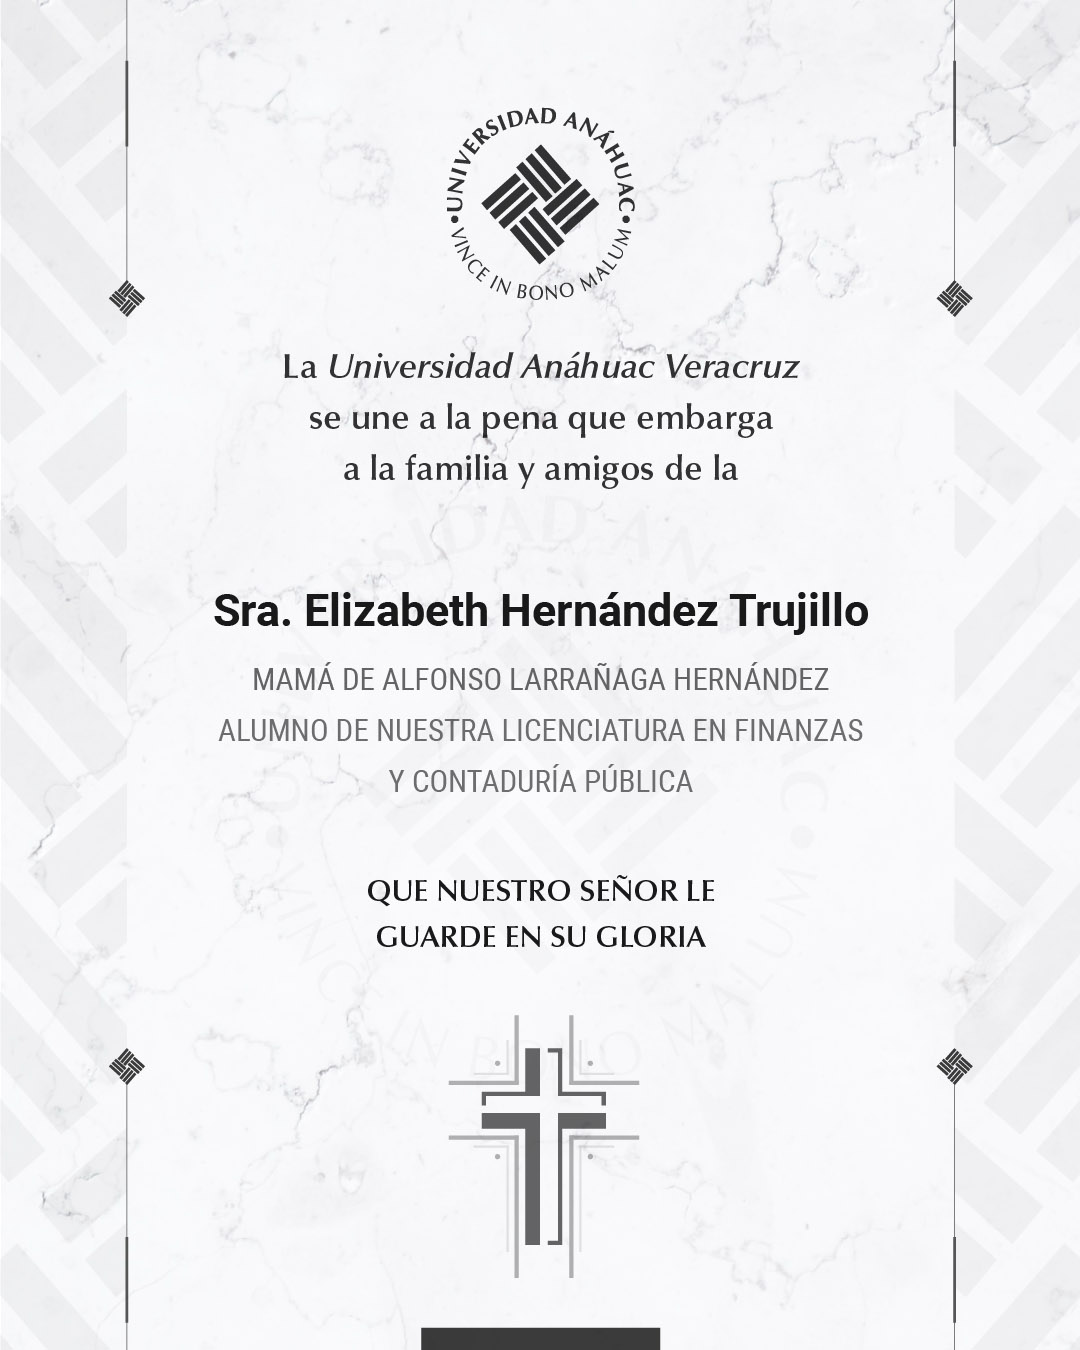 3 / 5 - Sra. Elizabeth Hernández Trujillo